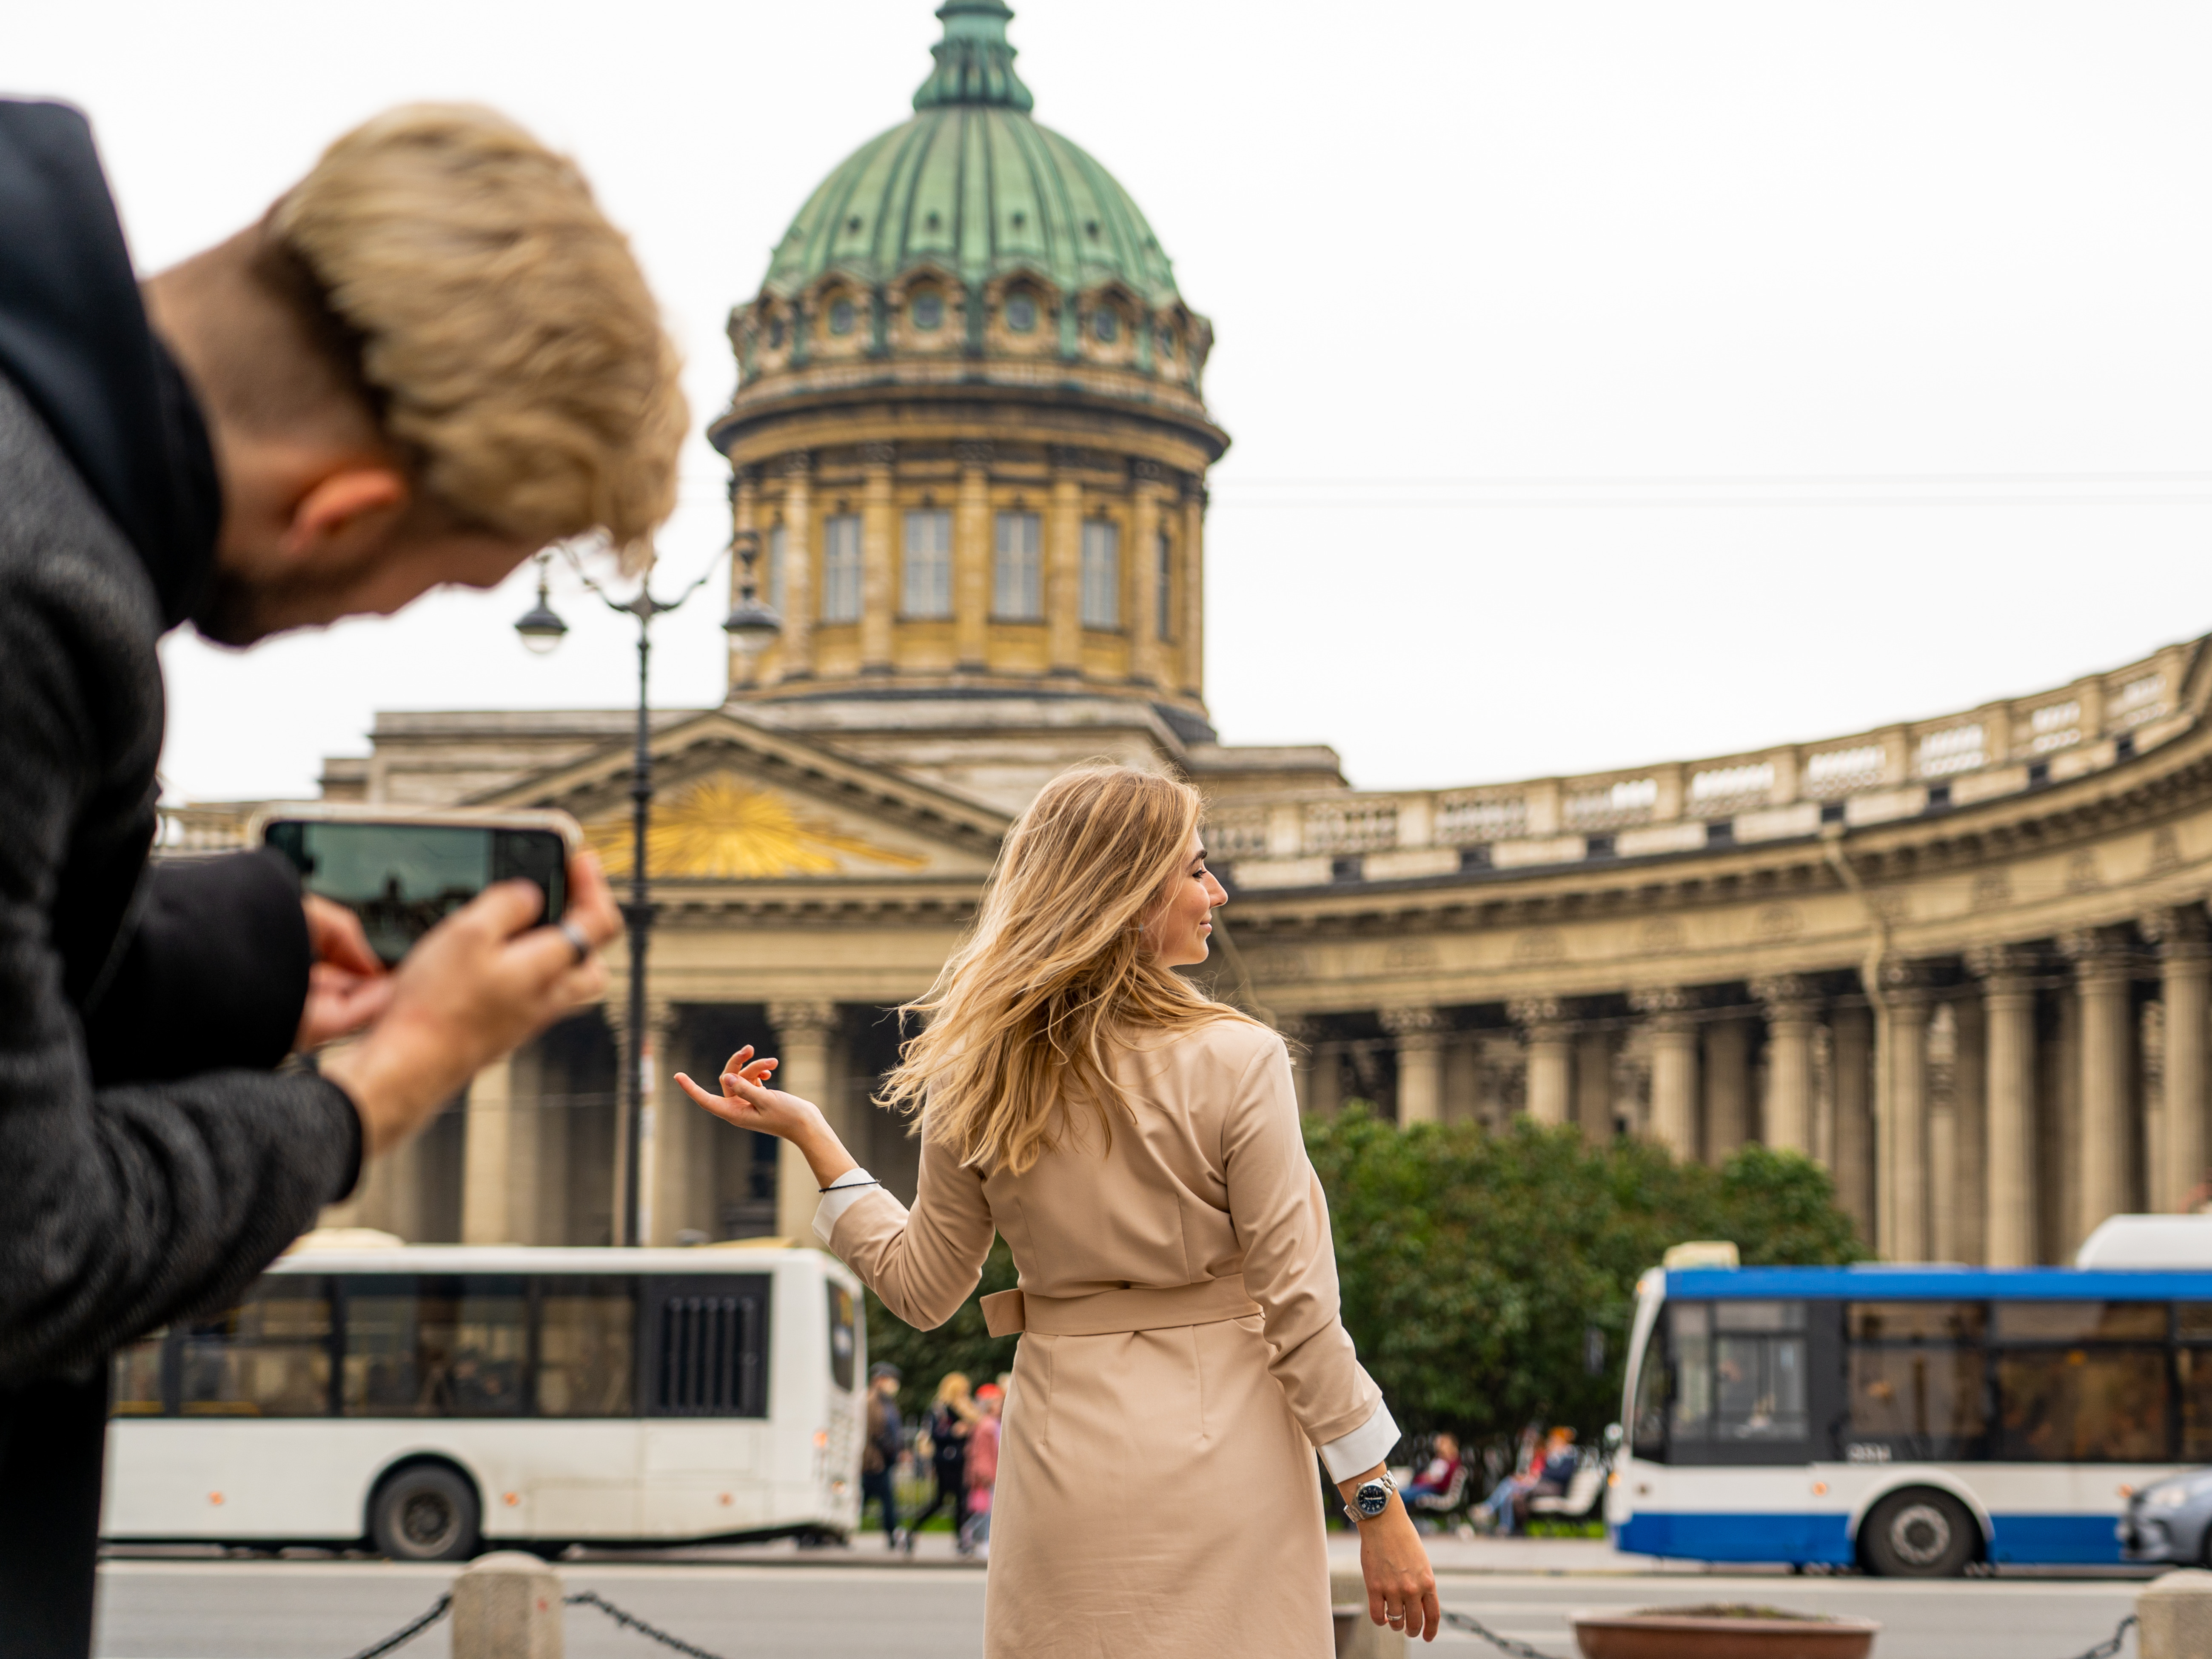 Новый конкурс от Visit Petersburg: расскажи про свои выходные и получи набор путешественника